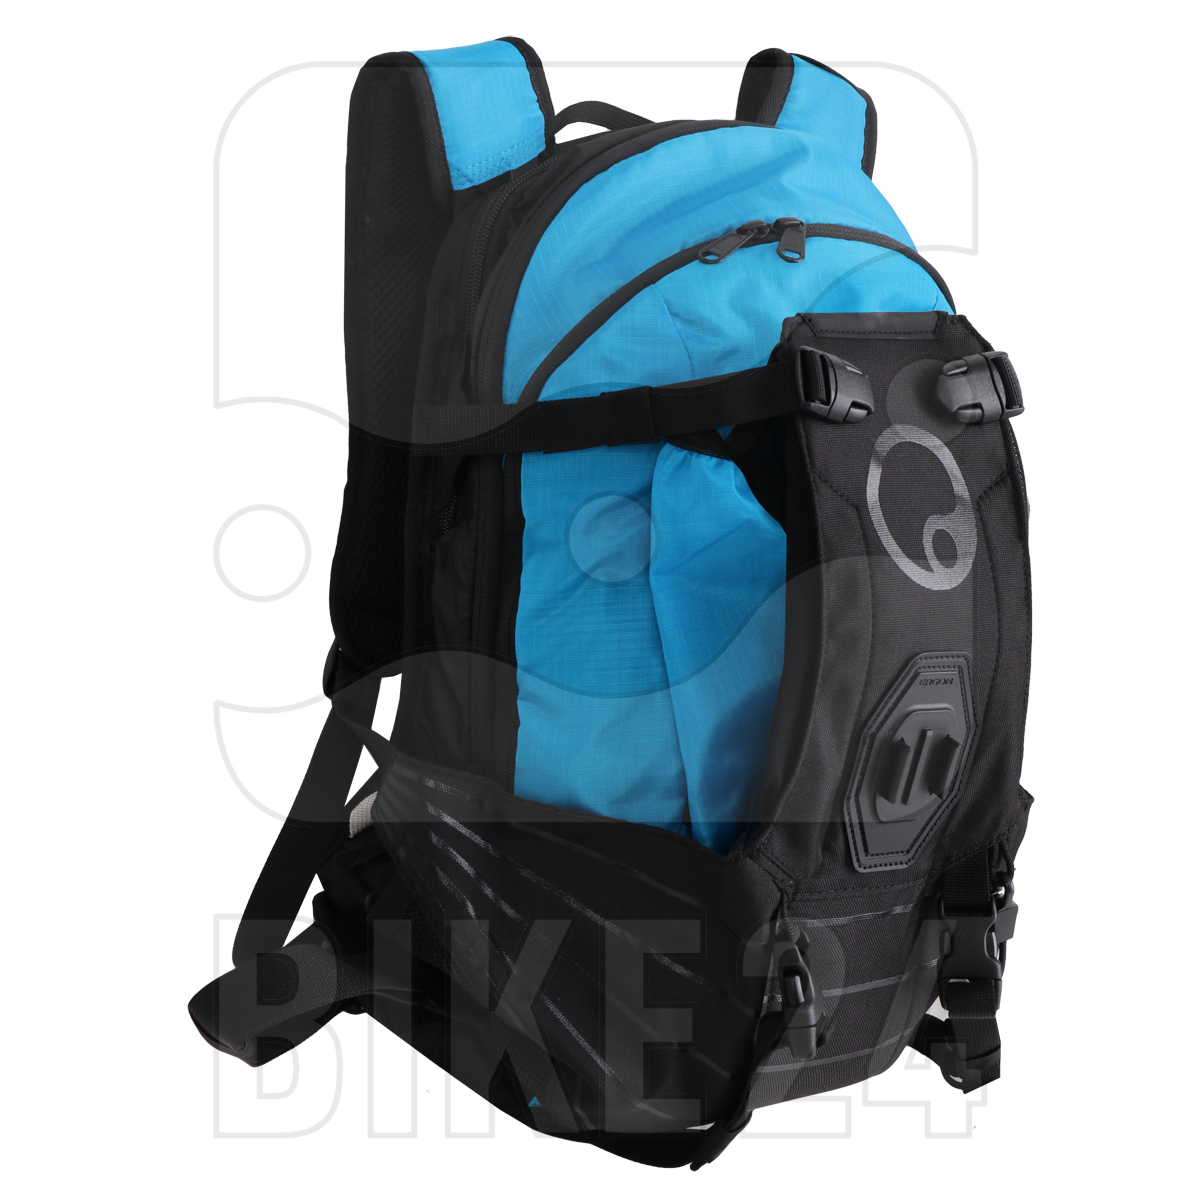 Produktbild von Ergon BA2 Enduro Rucksack - 10L - schwarz/blau